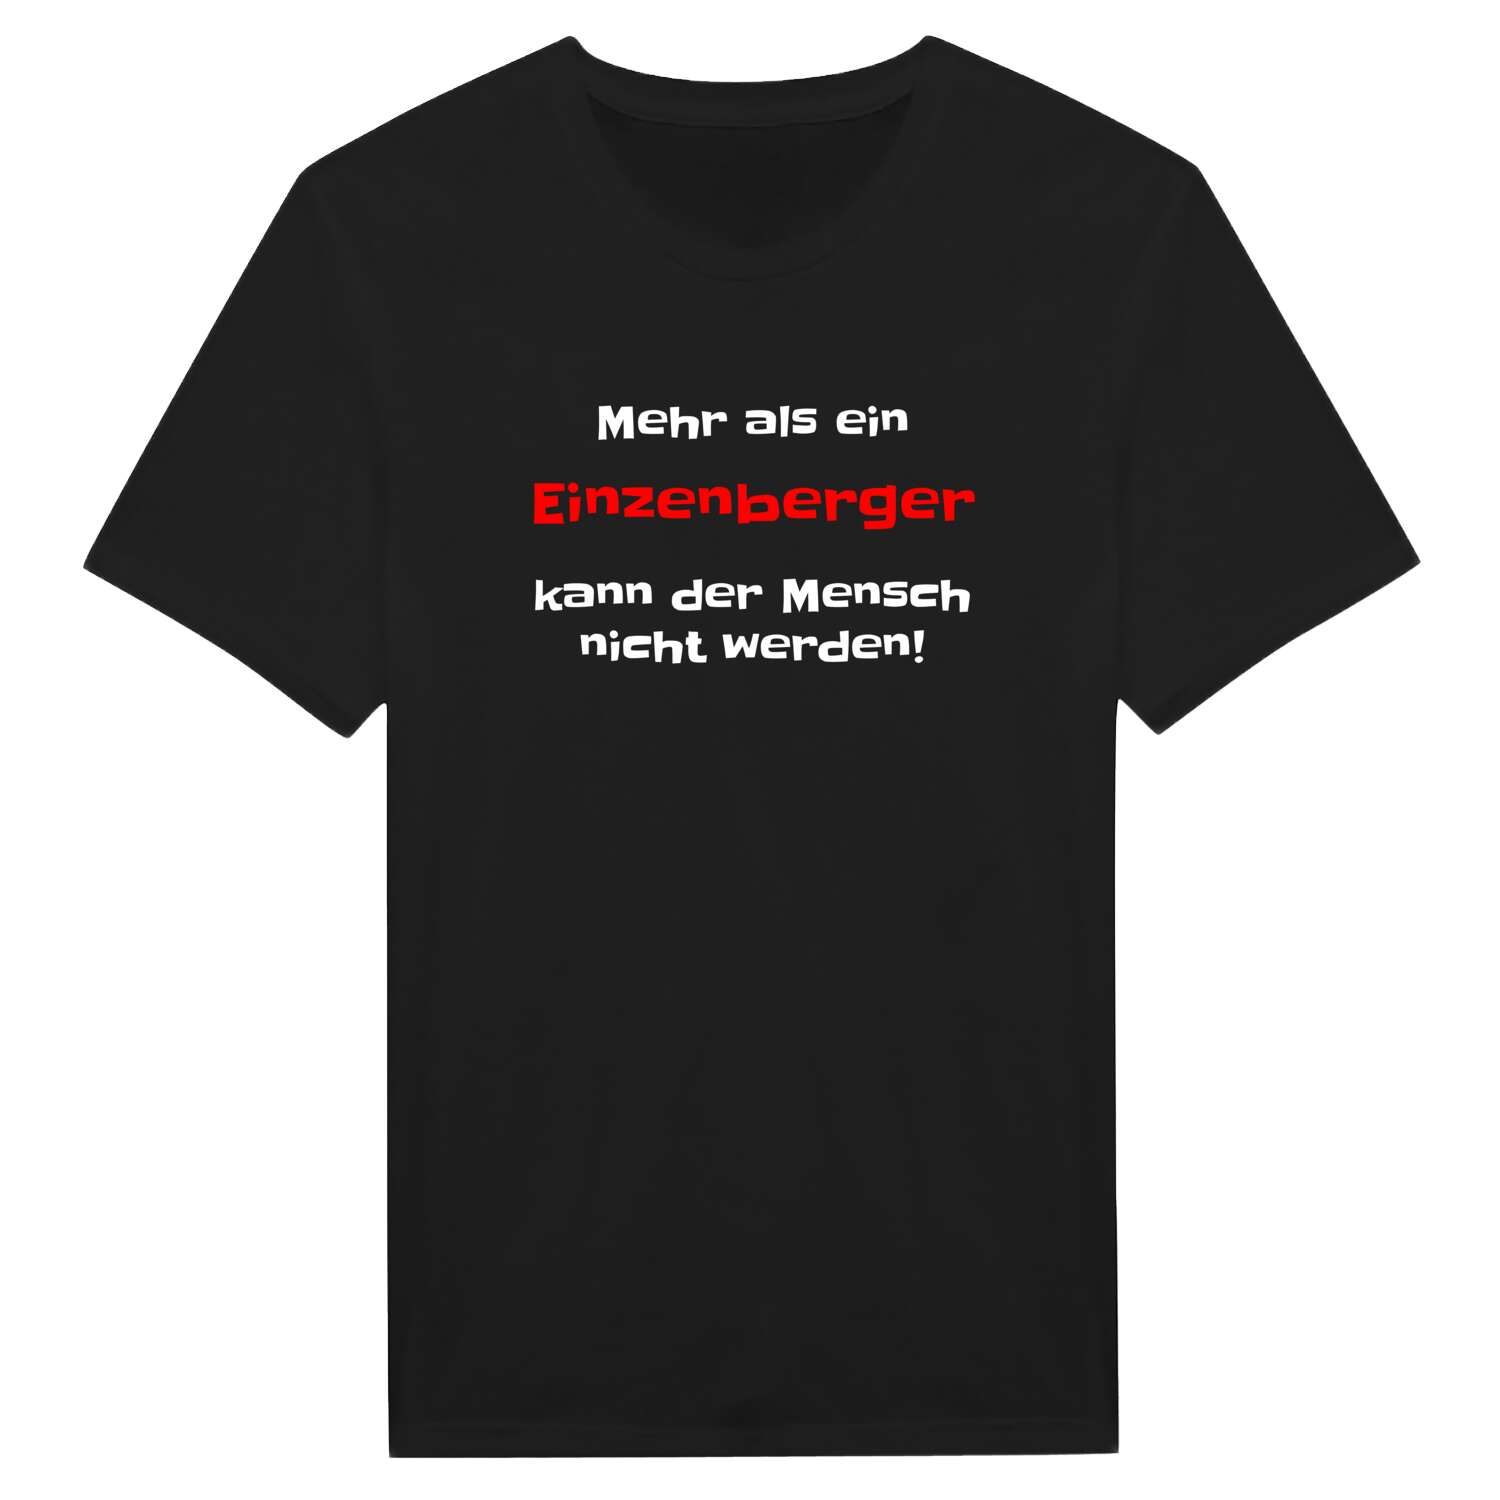 Einzenberg T-Shirt »Mehr als ein«